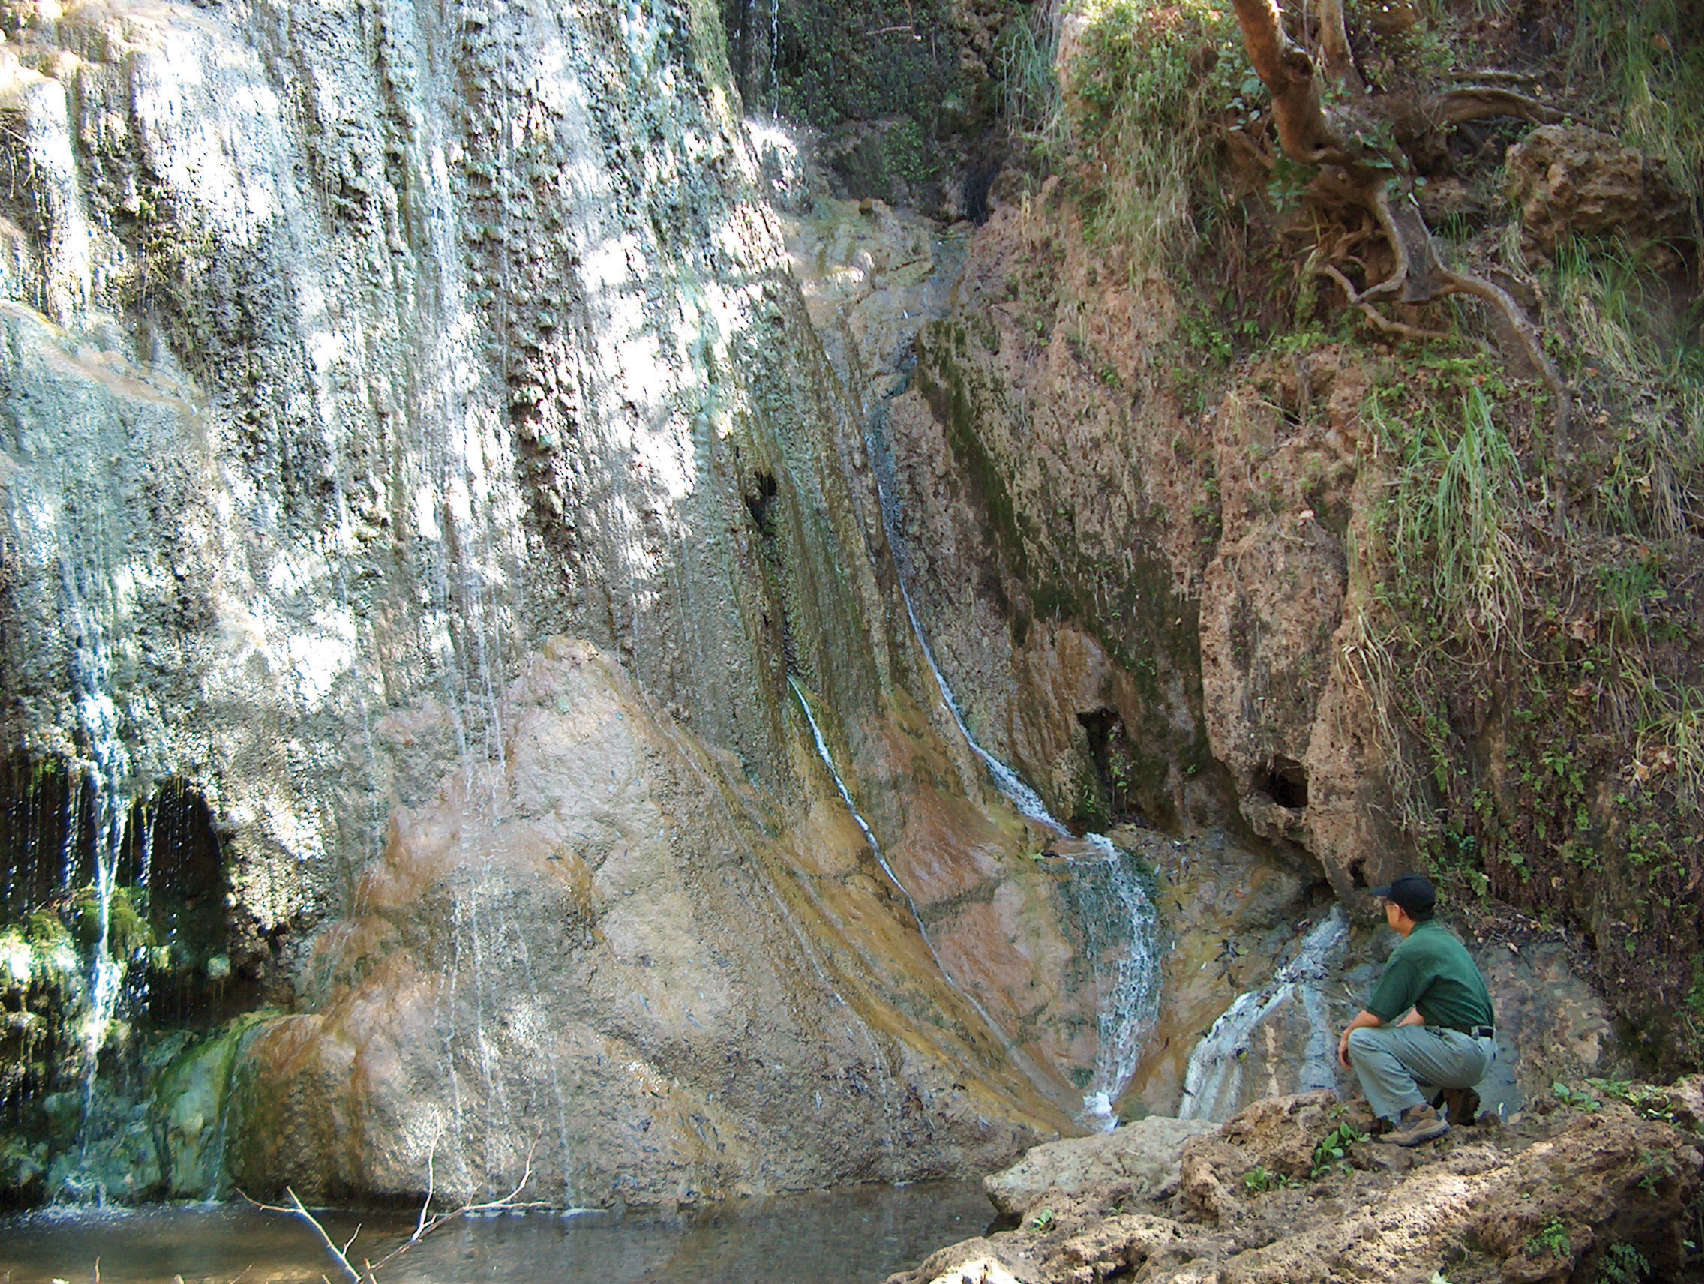 19. Escondido Falls